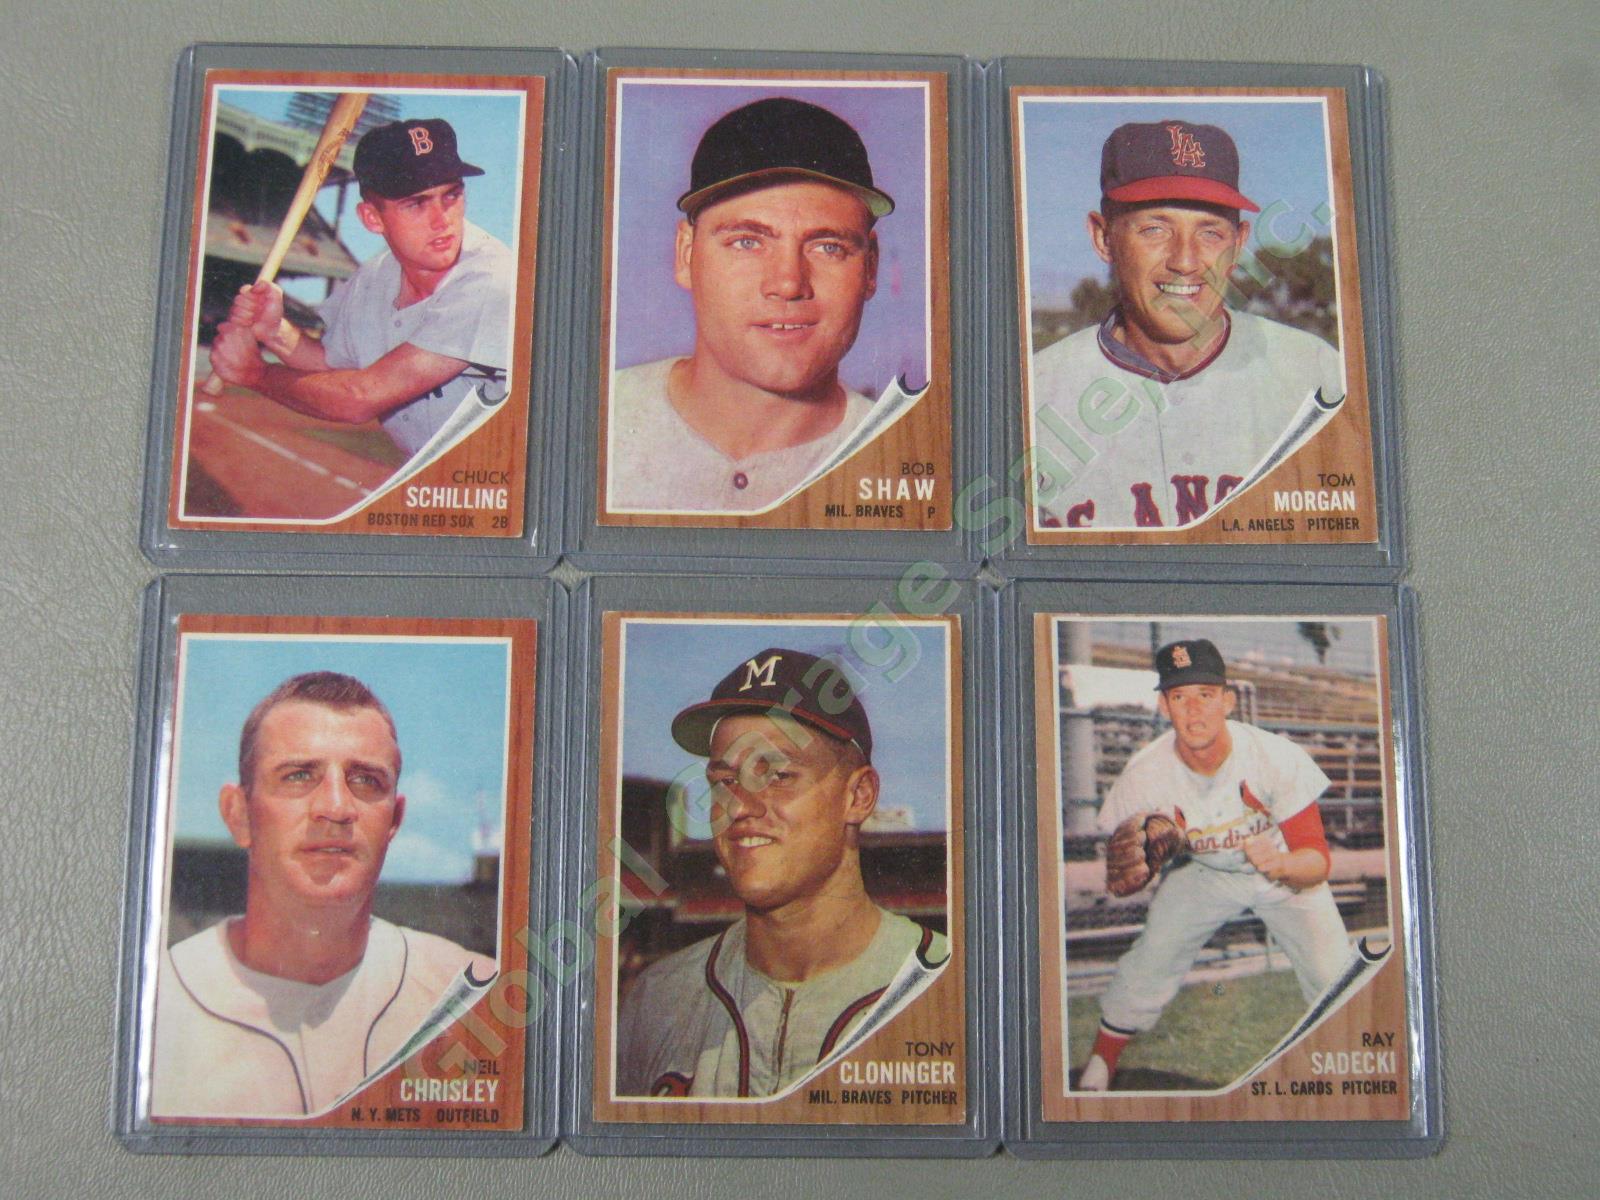 160 Vtg 1961 1962 1963 Topps Baseball Card Lot w/ RBI Home Run Leaders + VG-EX 8